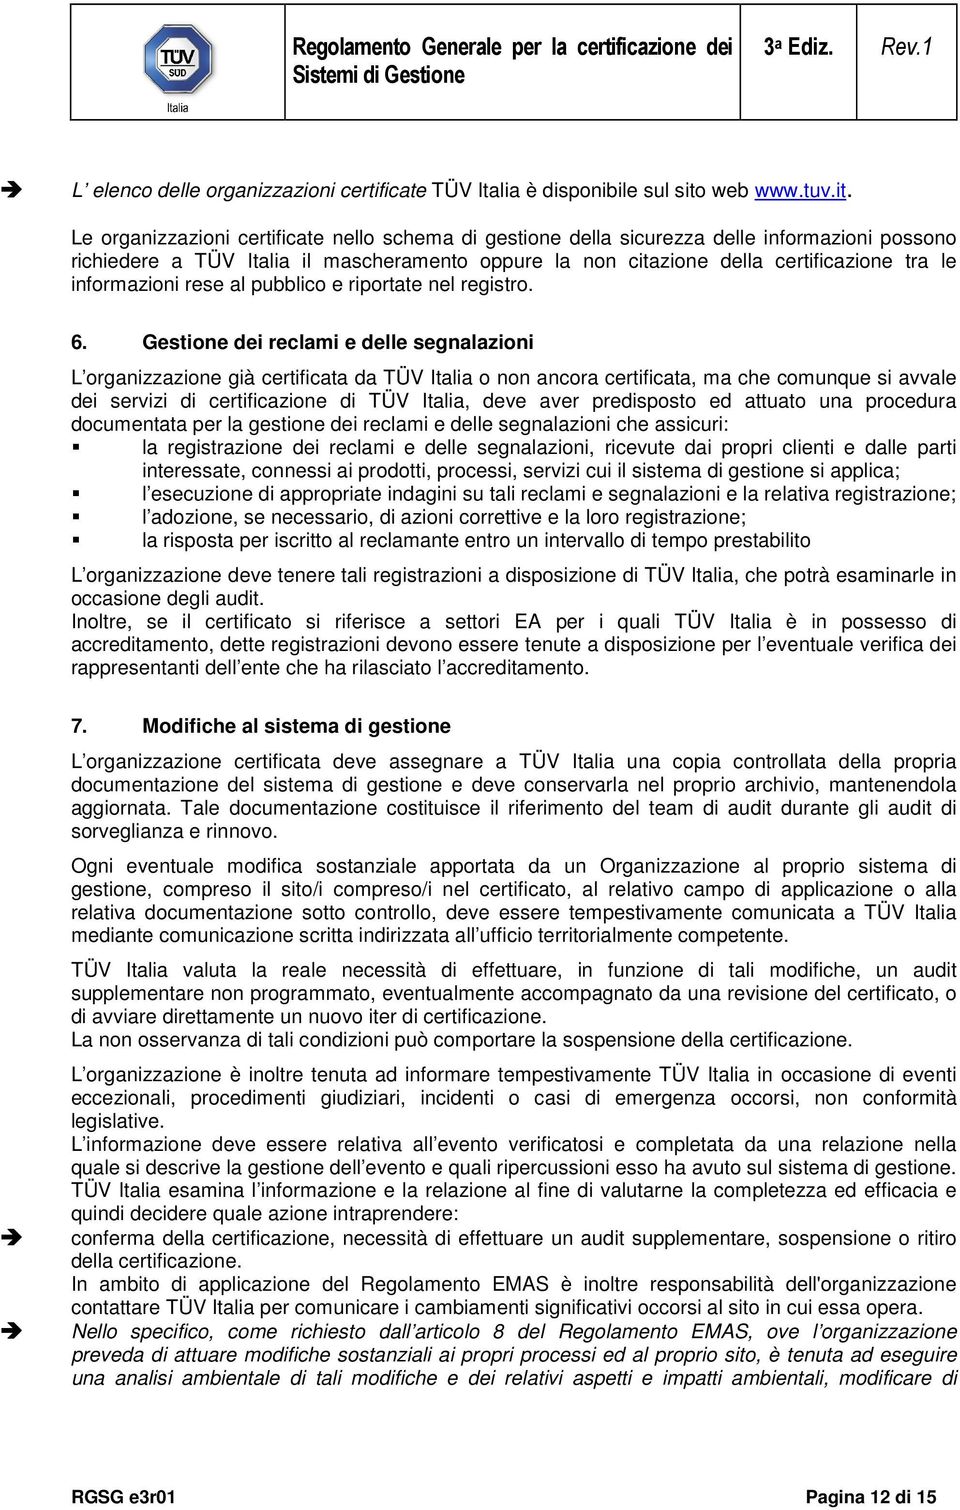 Le organizzazioni certificate nello schema di gestione della sicurezza delle informazioni possono richiedere a TÜV Italia il mascheramento oppure la non citazione della certificazione tra le